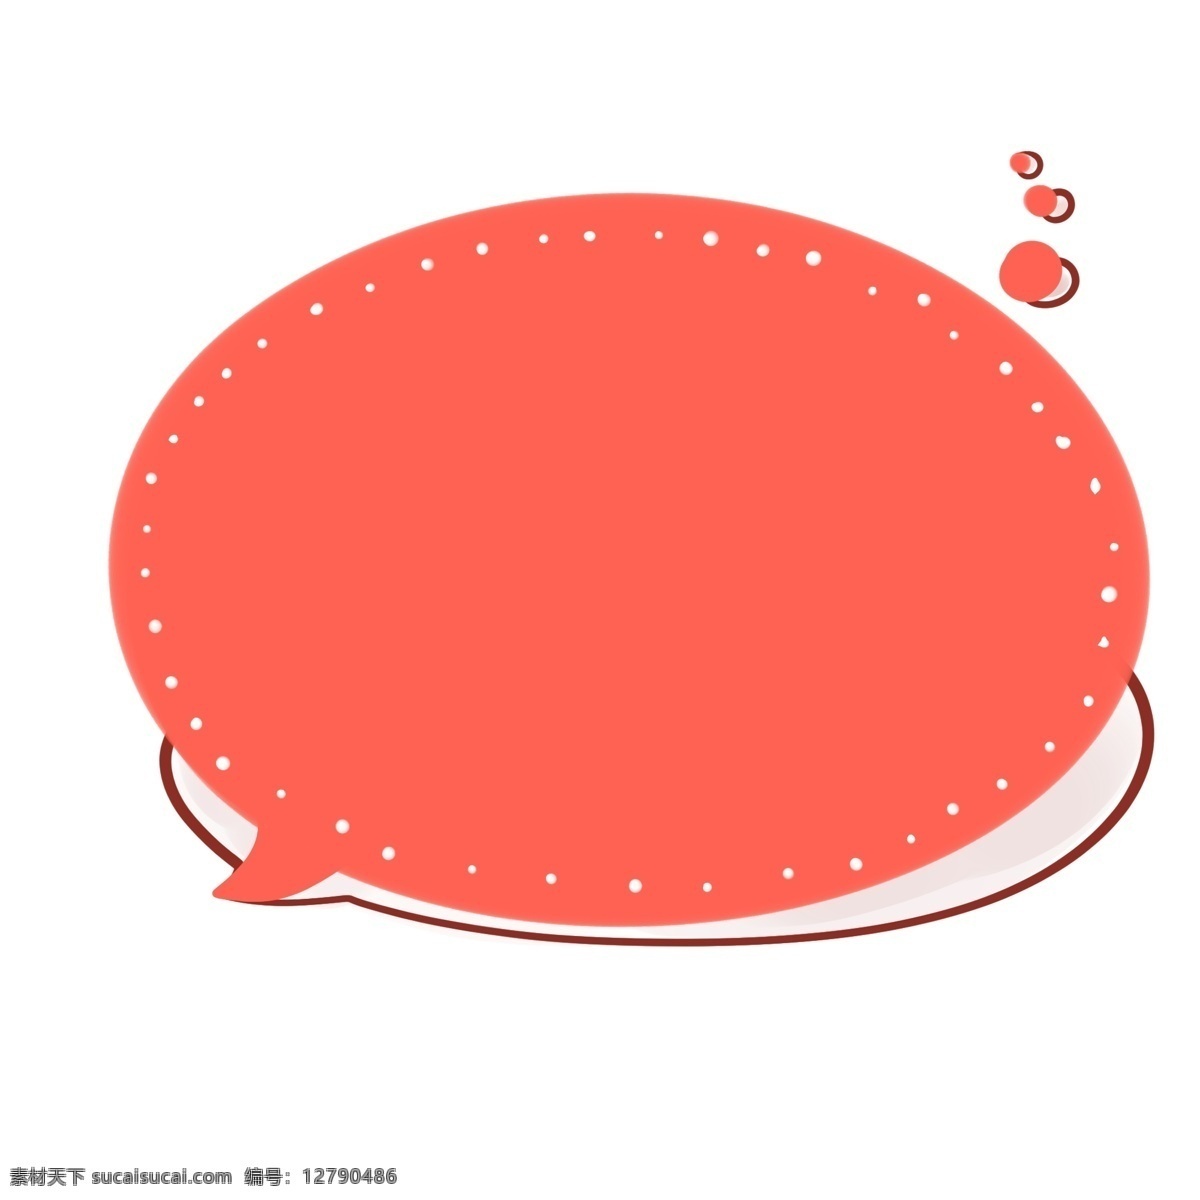 椭圆形 红色 对话框 白色点点描边 投影 小圆圈 边框 好看 鲜艳 实用 手绘 卡通 阴影